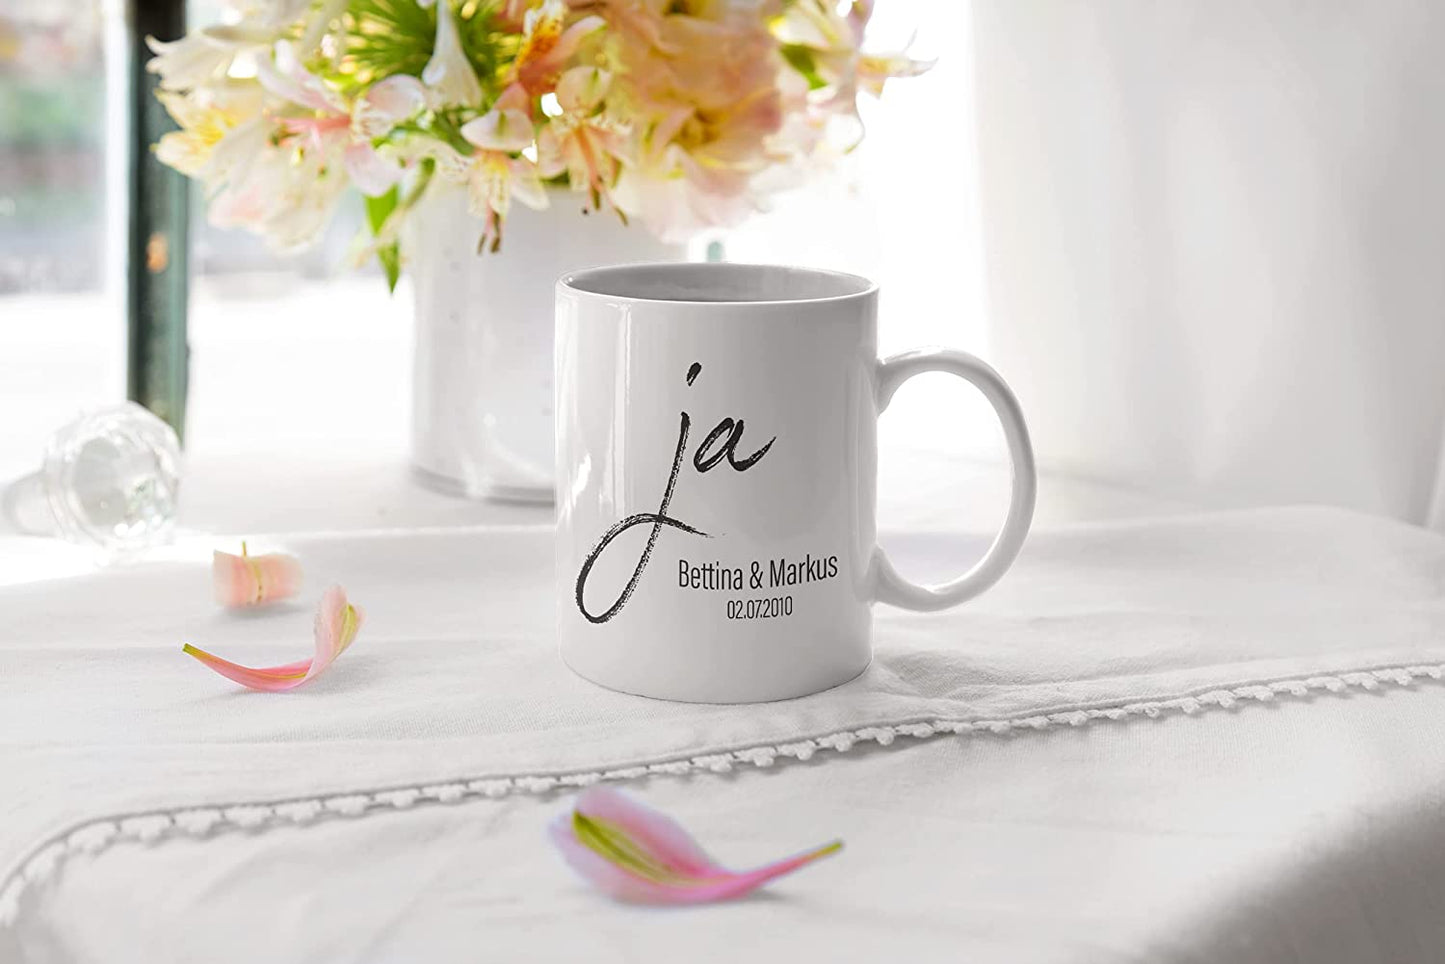 Tasse Hochzeit Kaffee-Tasse personalisiert Partner Namen und Datum individualisierbar Hochzeitstag Hochzeitsgeschenk Liebe Liebesgeschenk